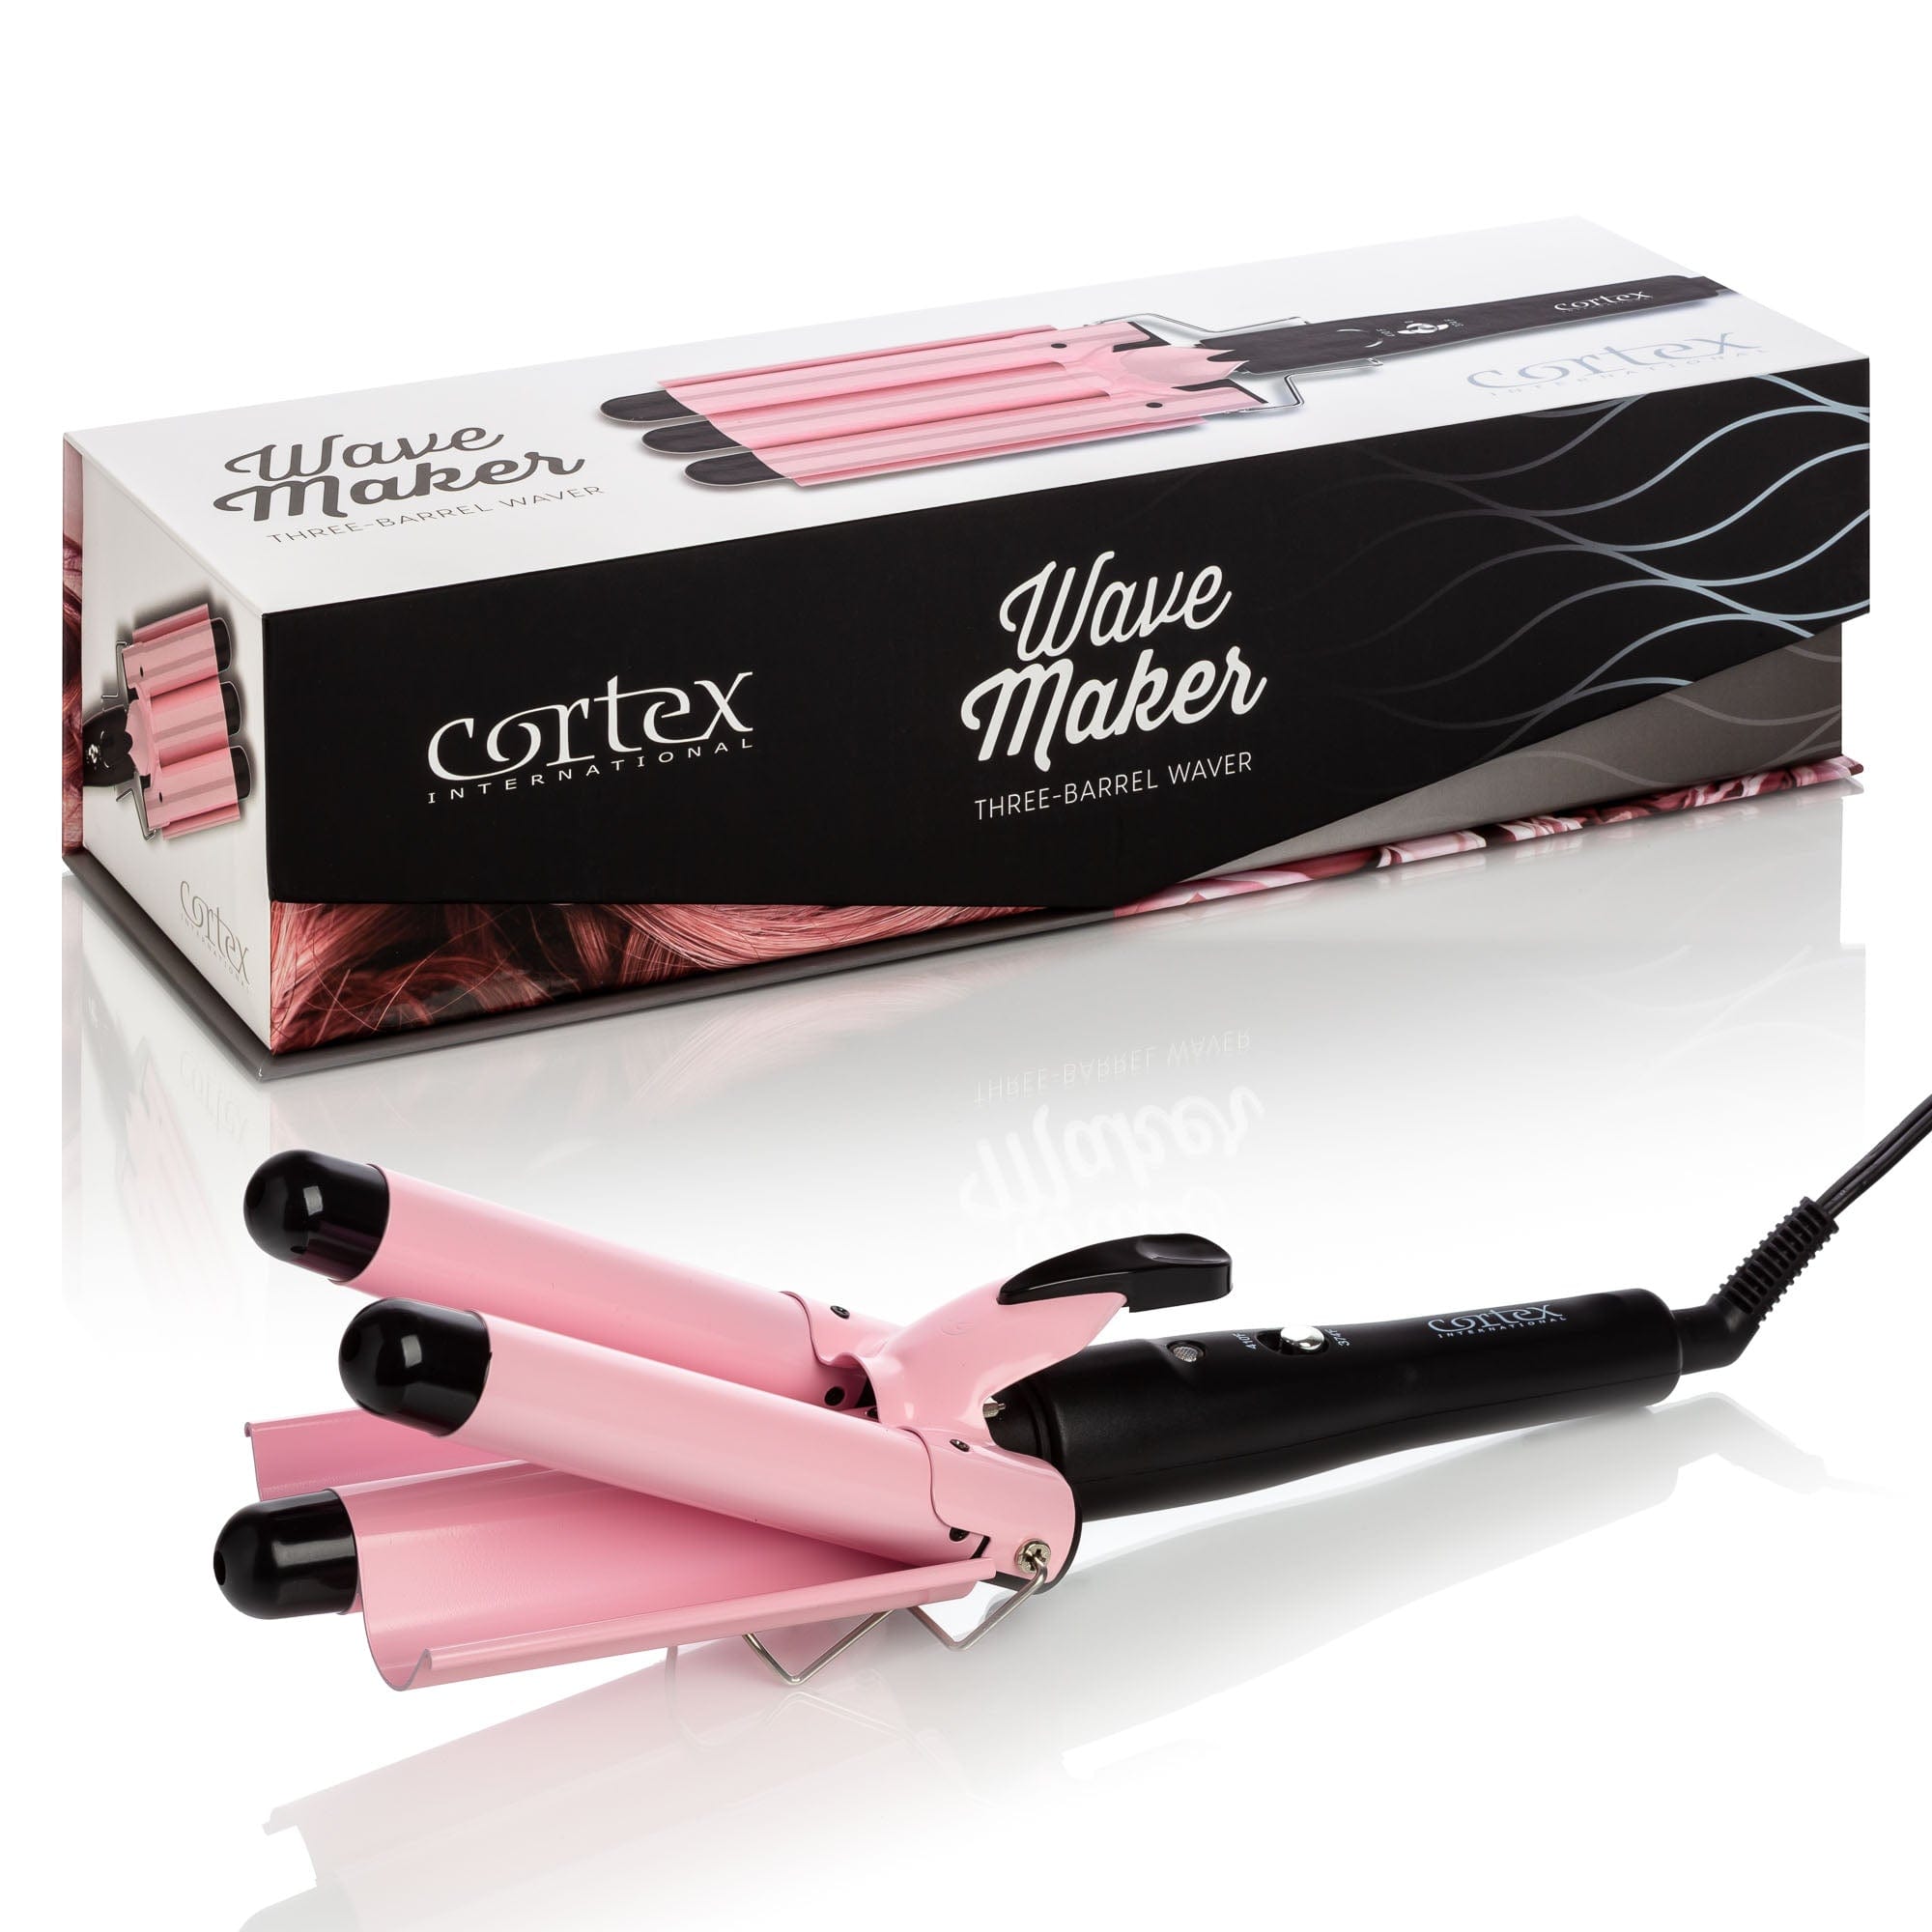 Cortex International Black/Pink Wave Maker - 3-Barrel Waver